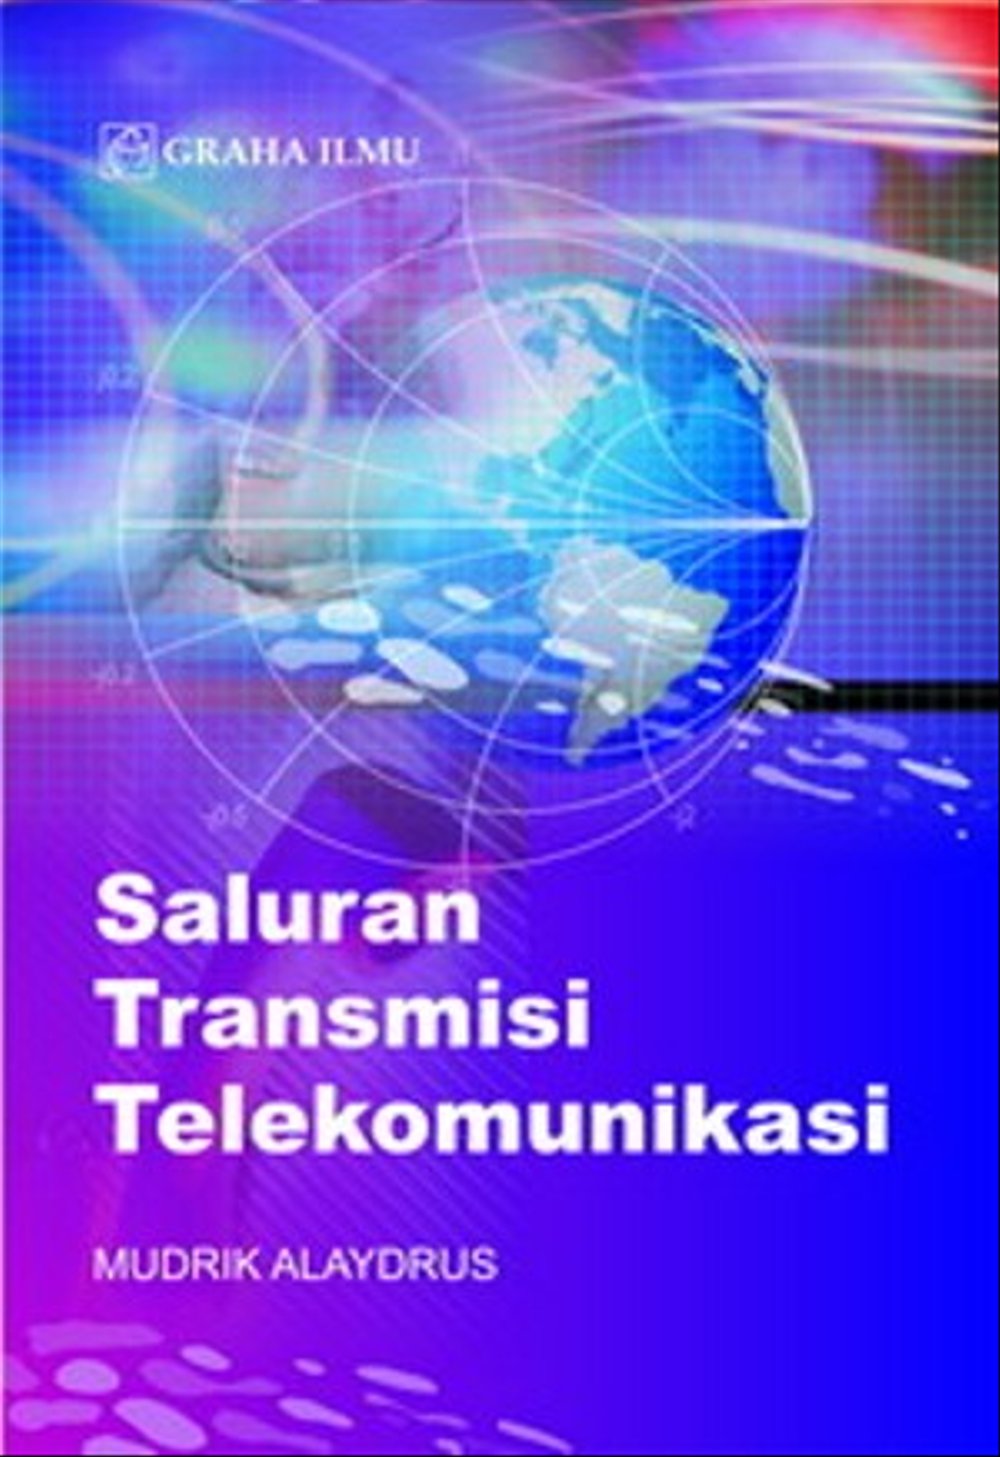 Saluran transmisi telekomunikasi Mudrik Alaydrus